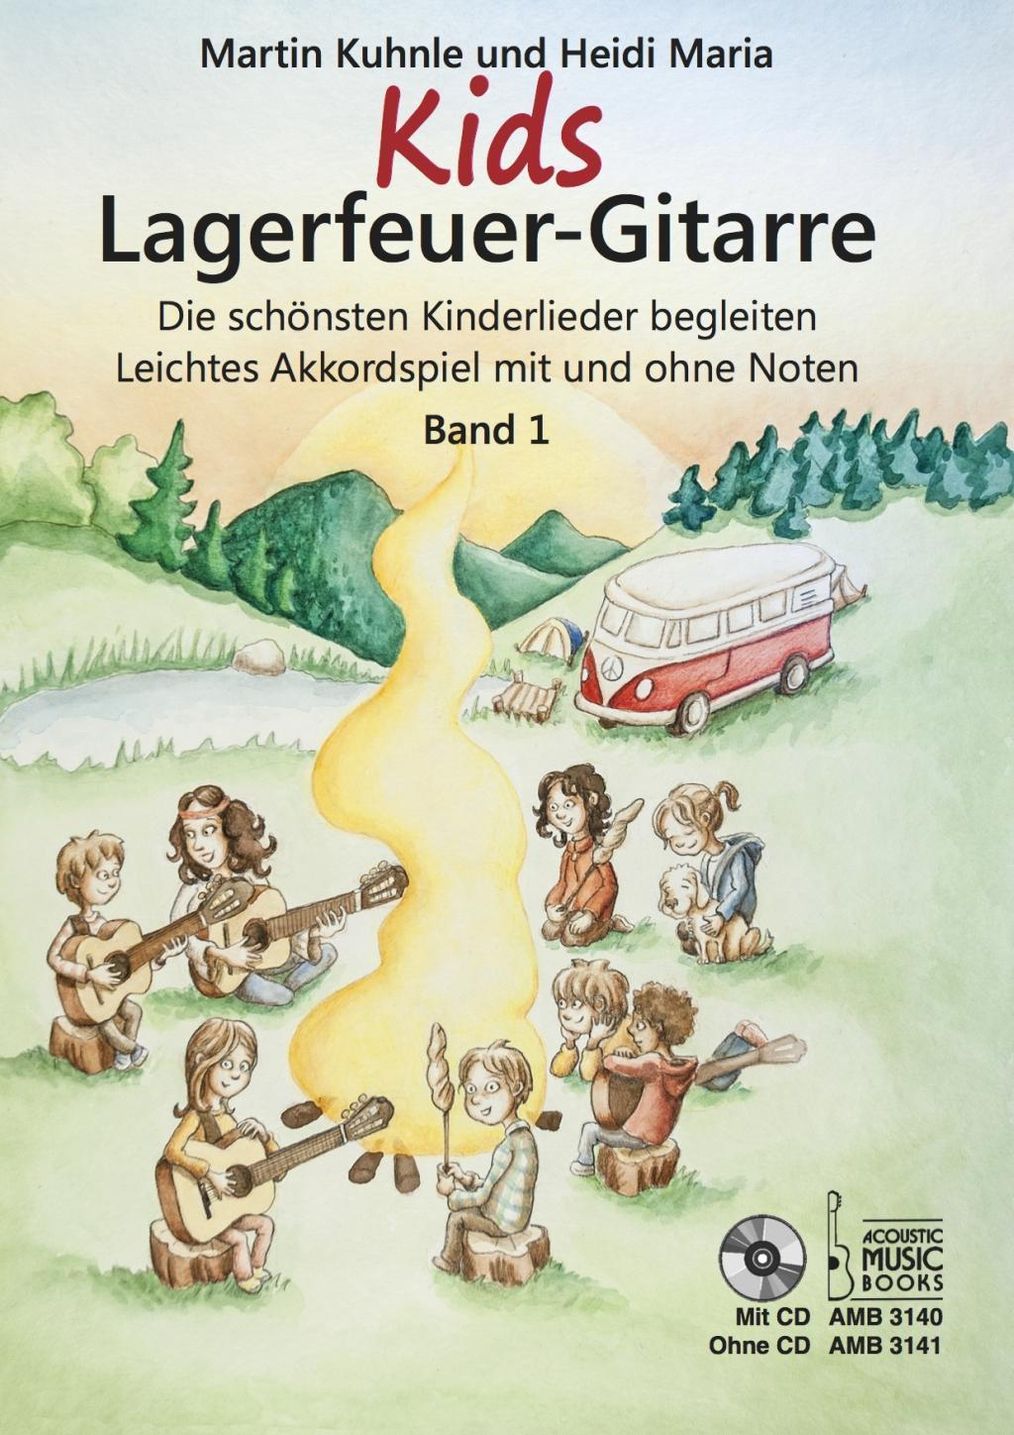 Kids Lagerfeuer-Gitarre Buch versandkostenfrei bei Weltbild.at bestellen